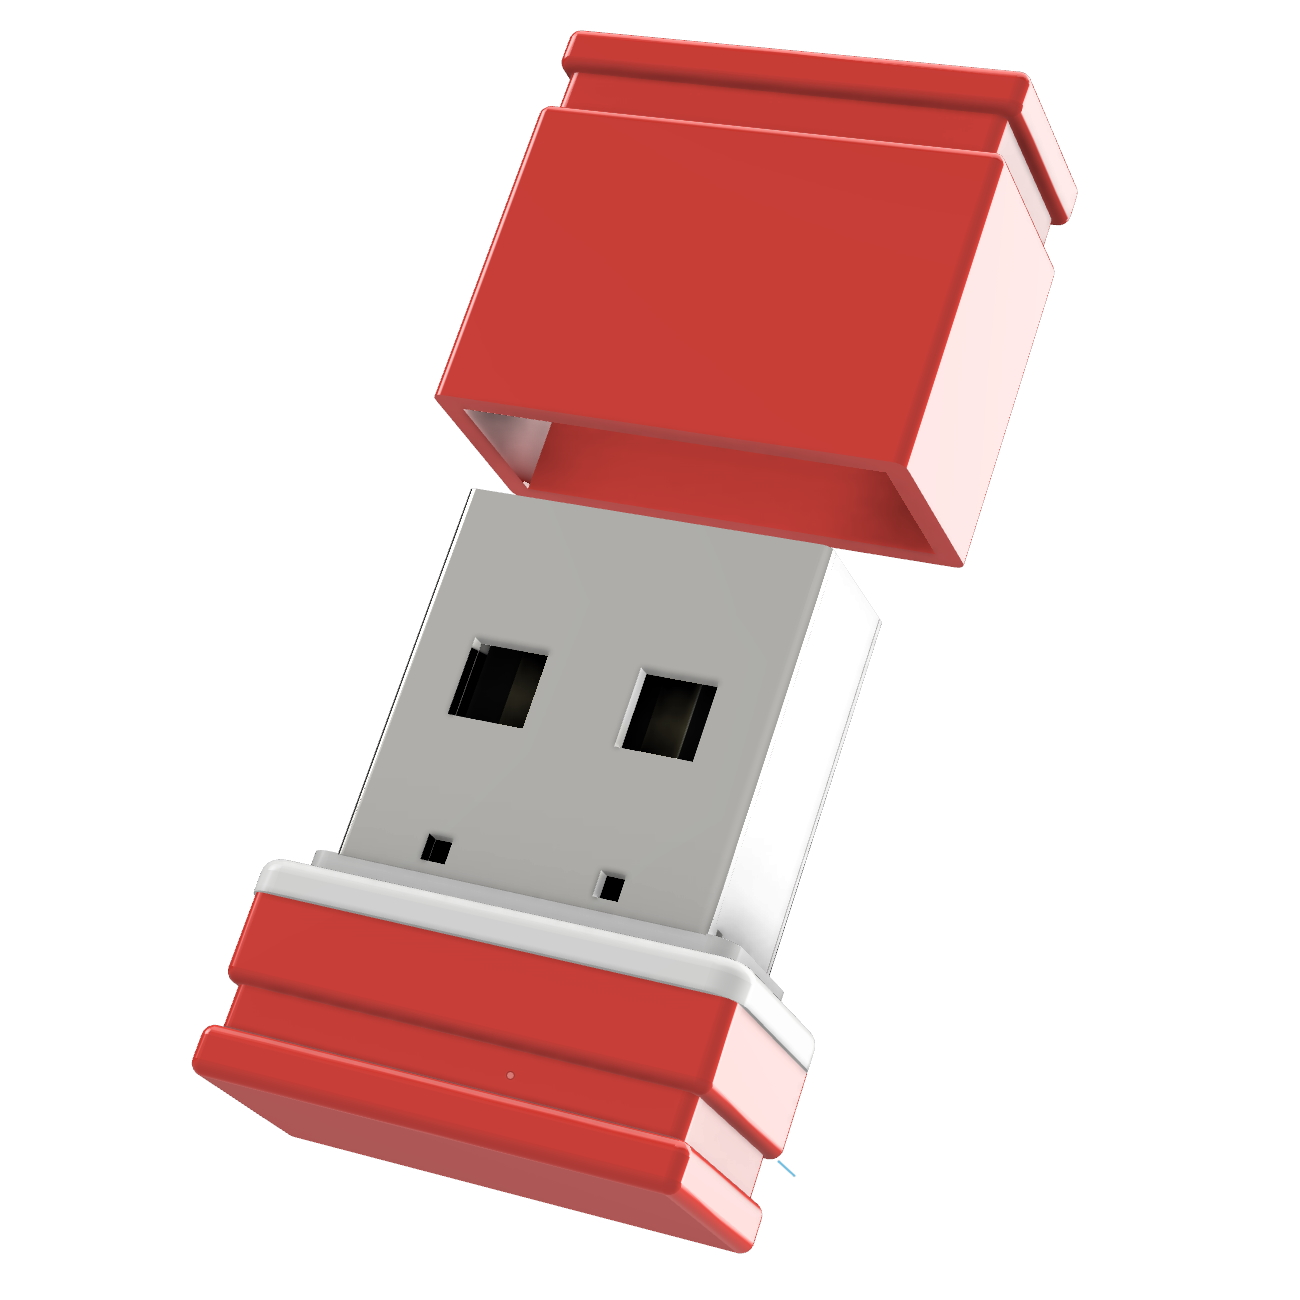 64 Mini GERMANY USB-Stick ®ULTRA P1 (Rot/Weiss, GB) USB